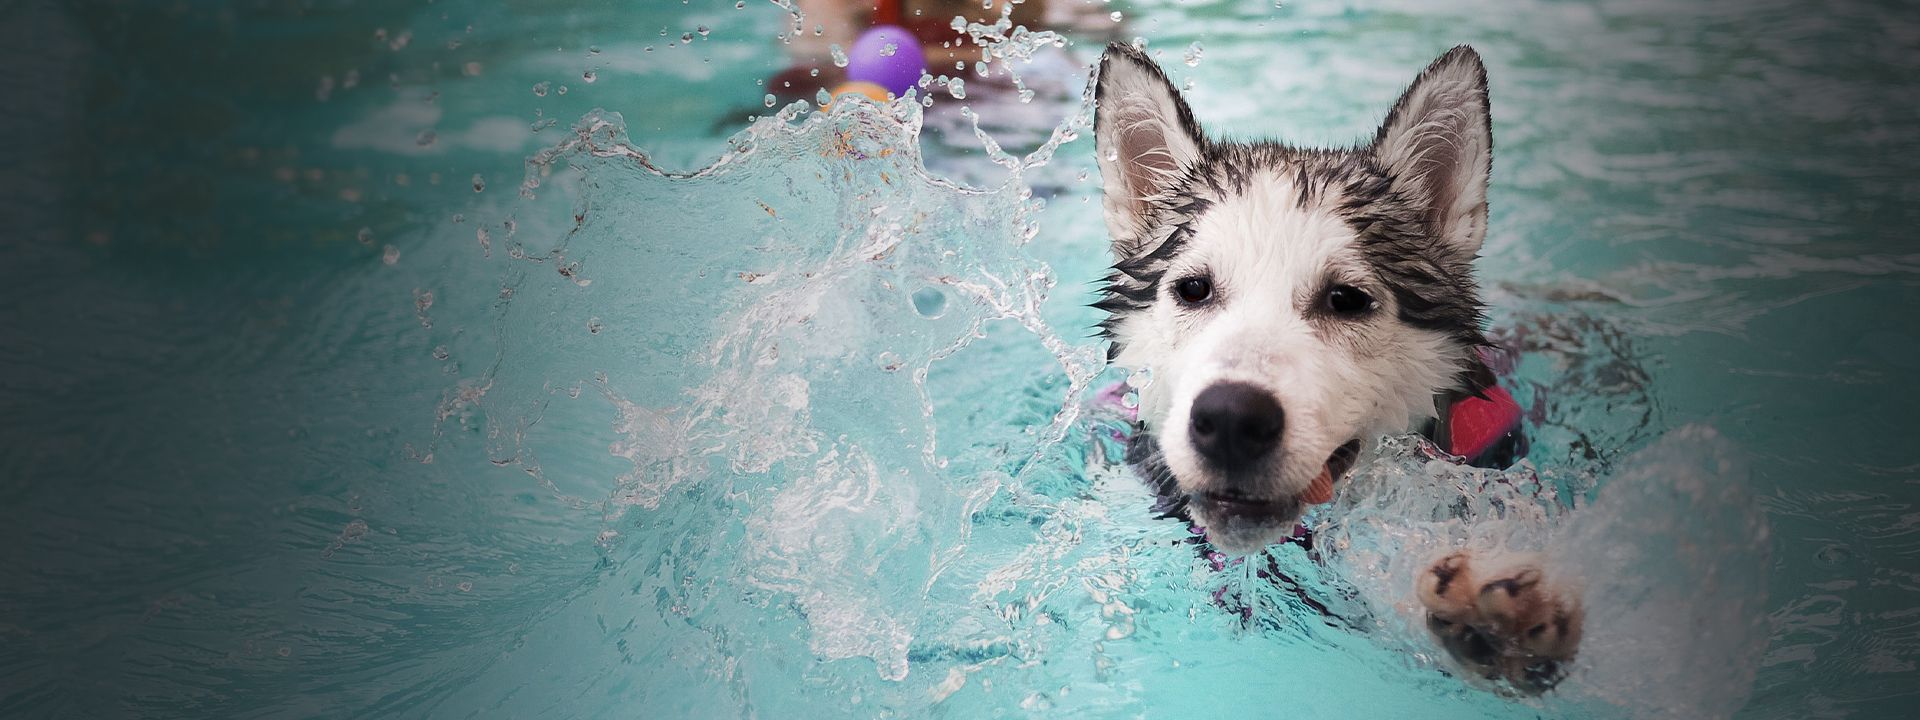 husky dog swimming